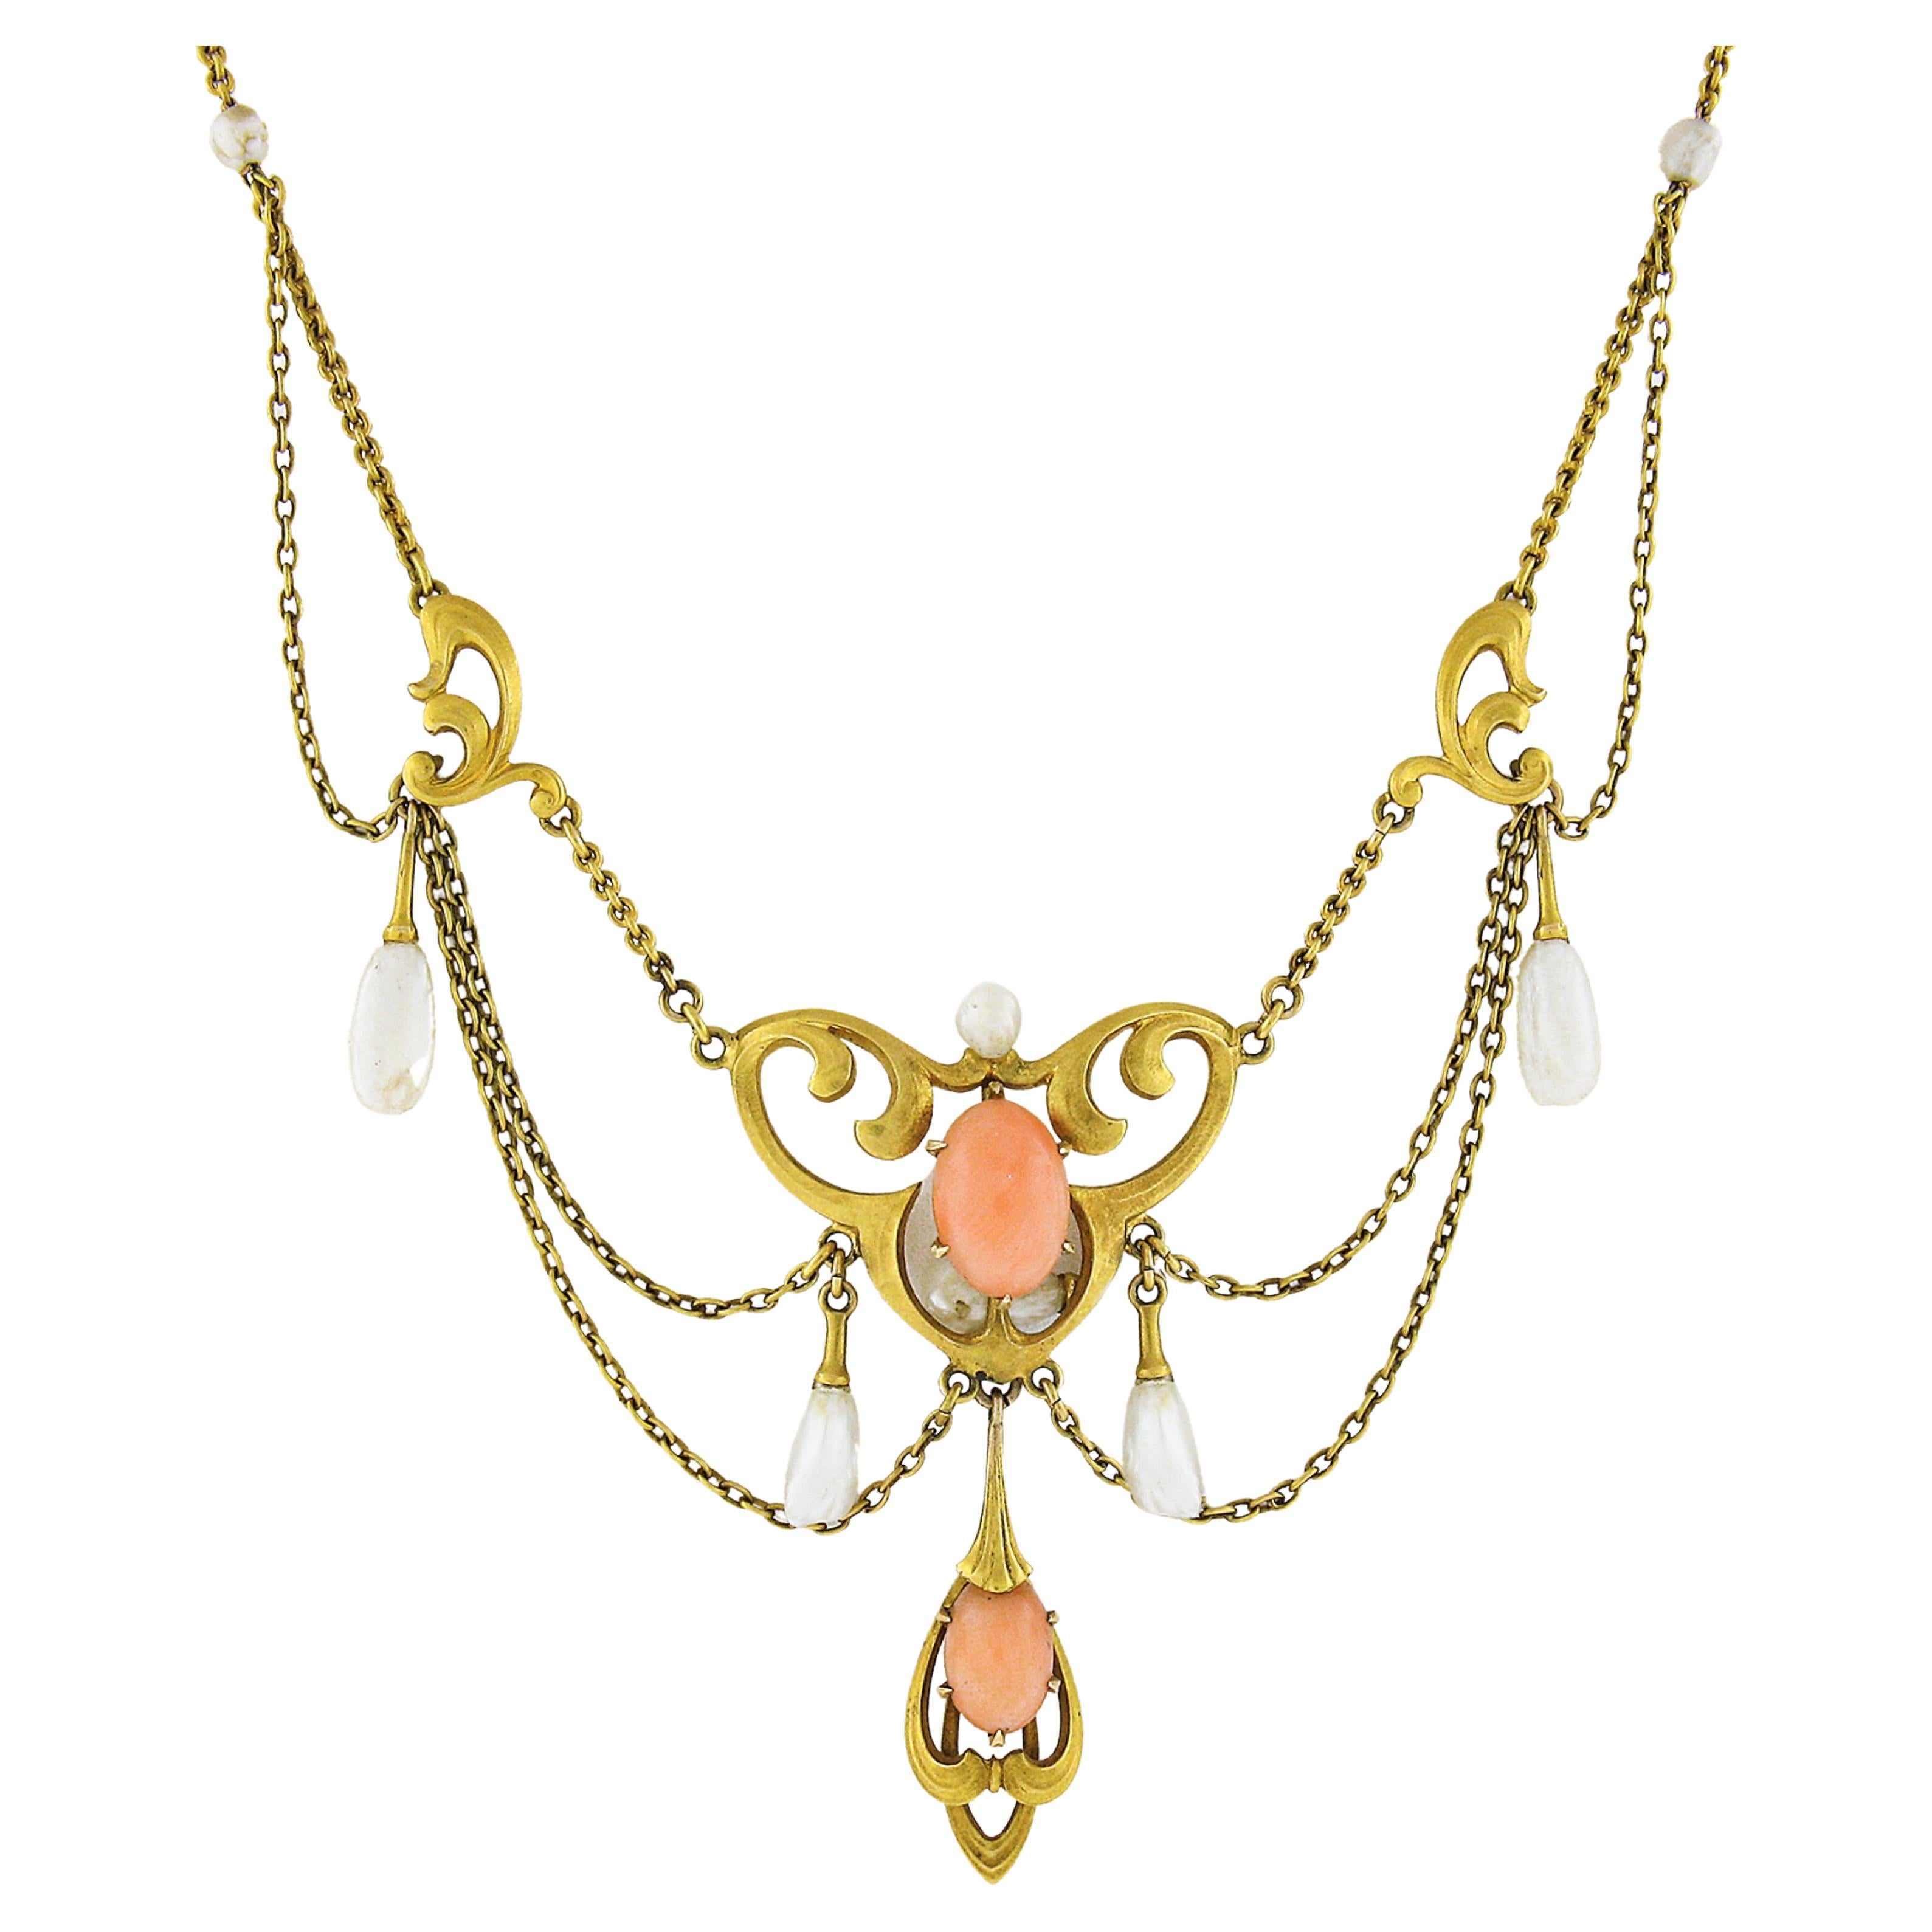 Collier crémaillère Art nouveau ancien en or 14 carats, corail et perles d'eau douce